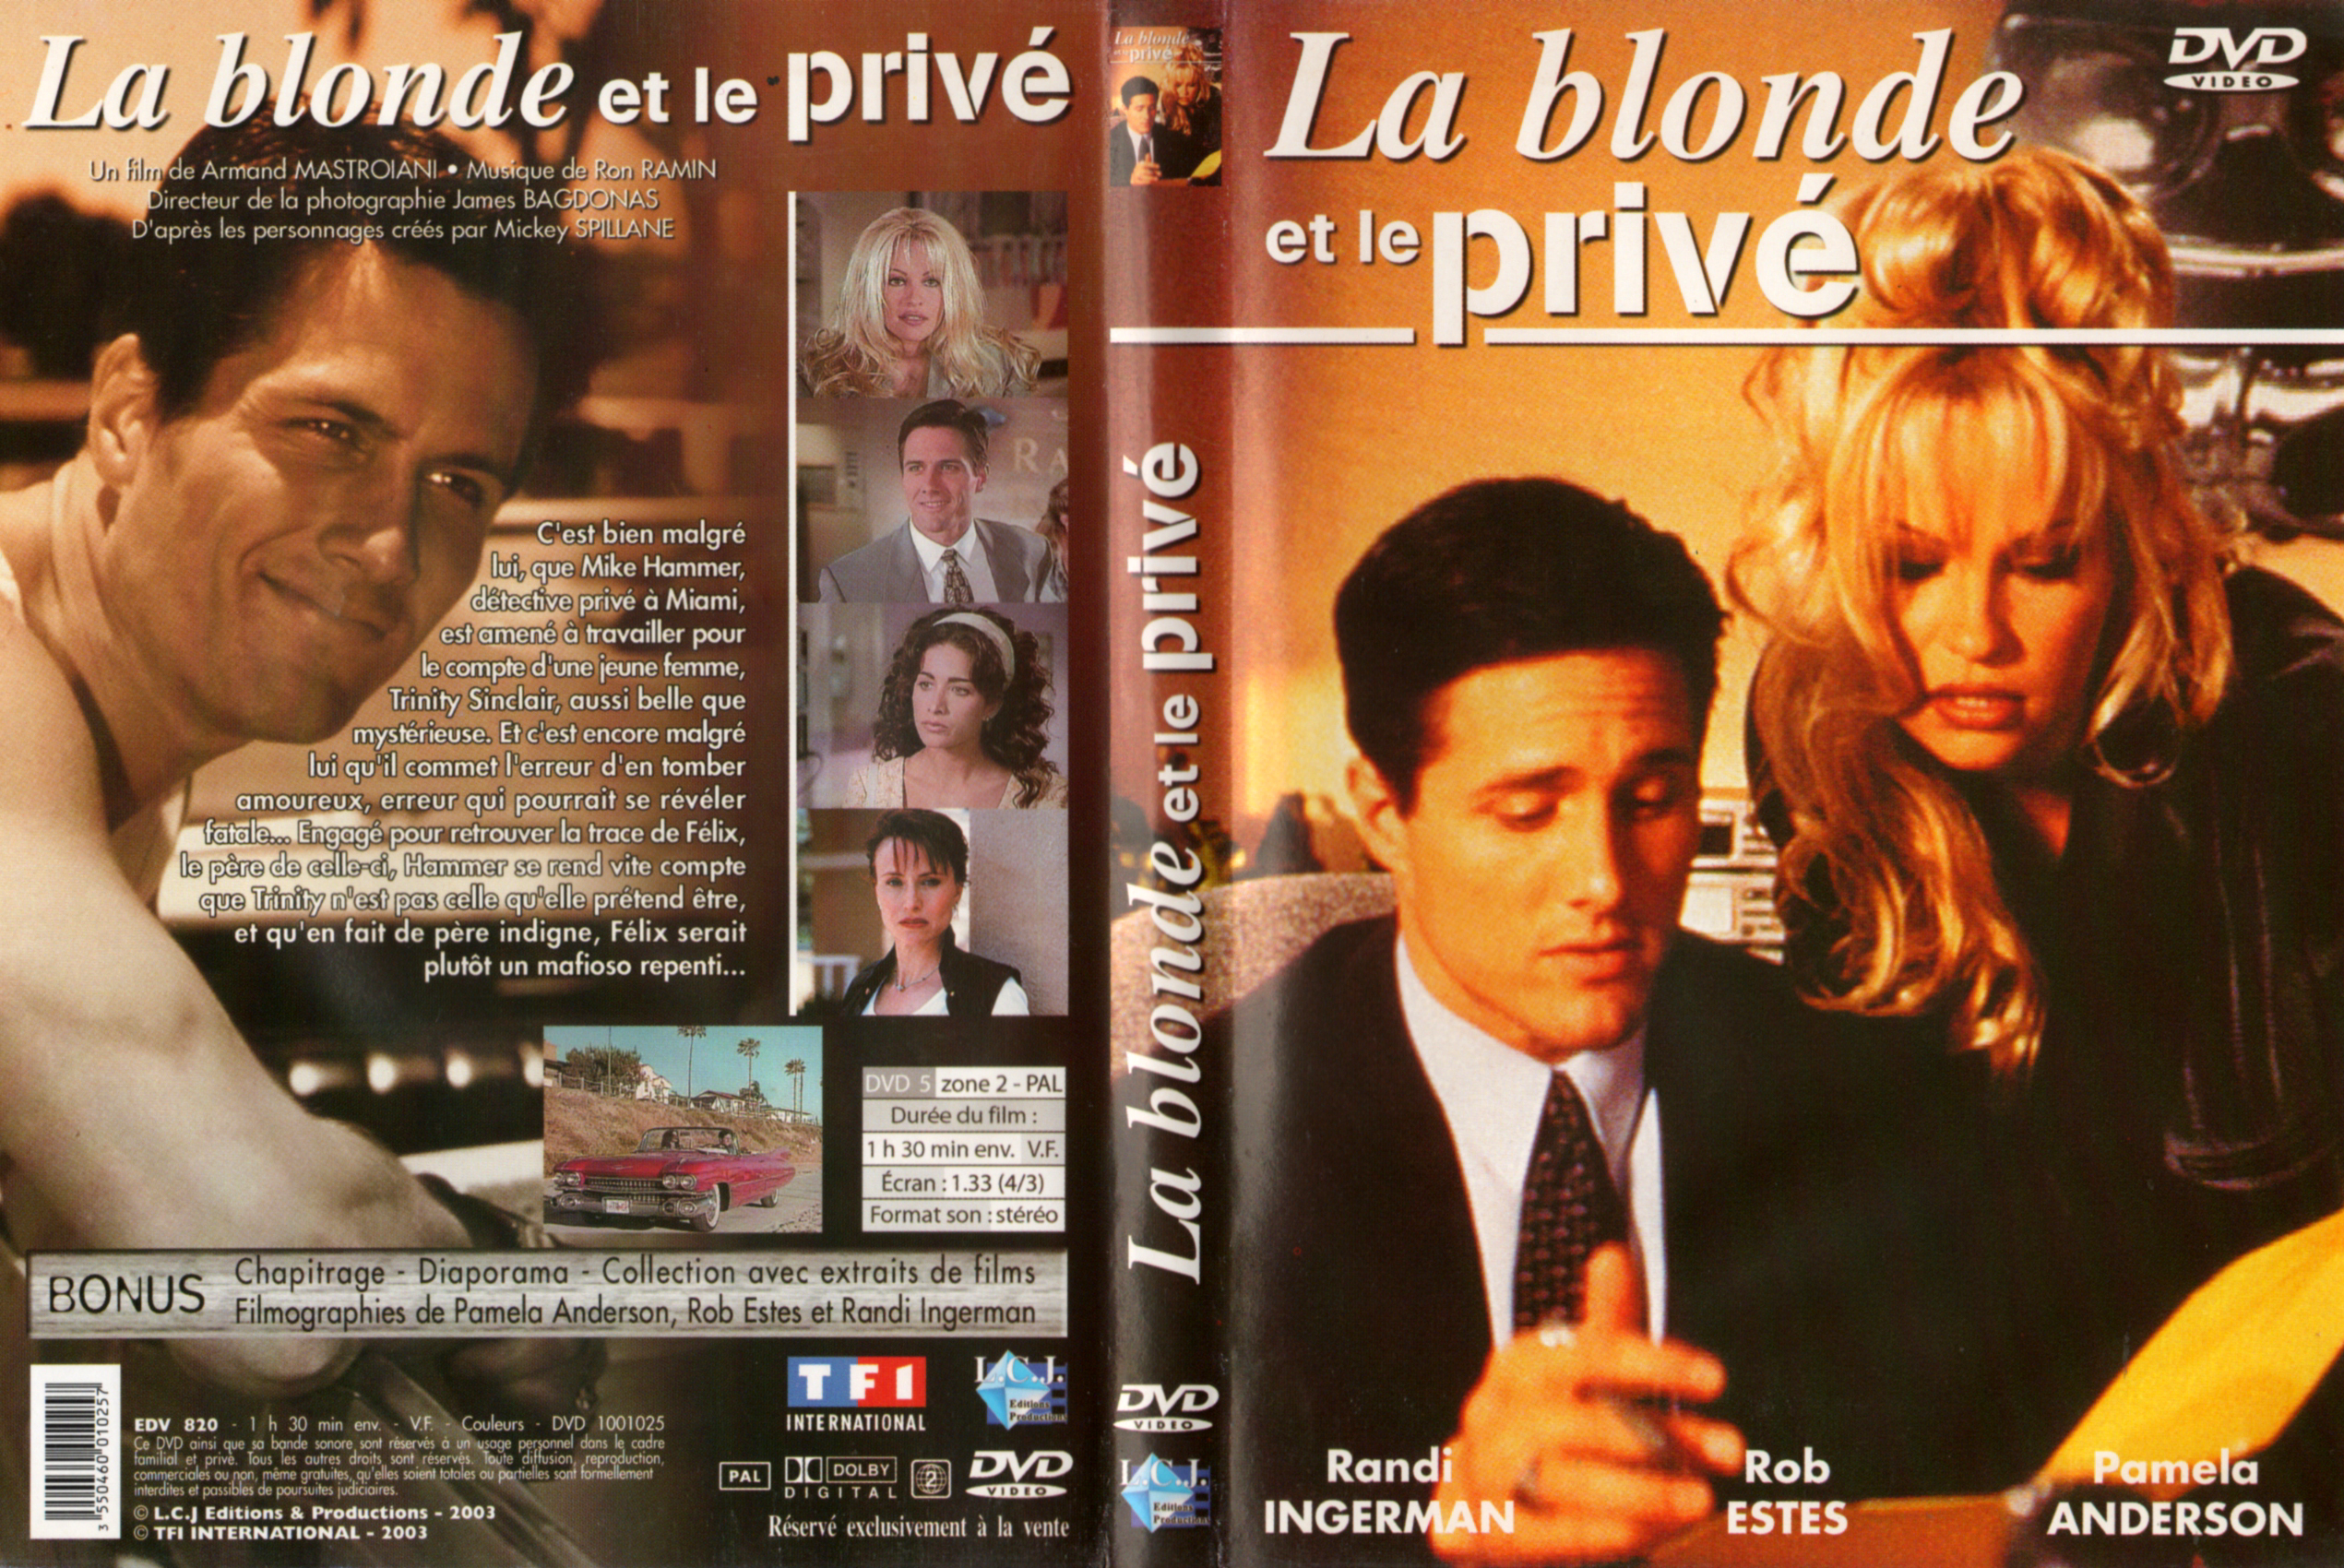 Jaquette DVD La blonde et le priv